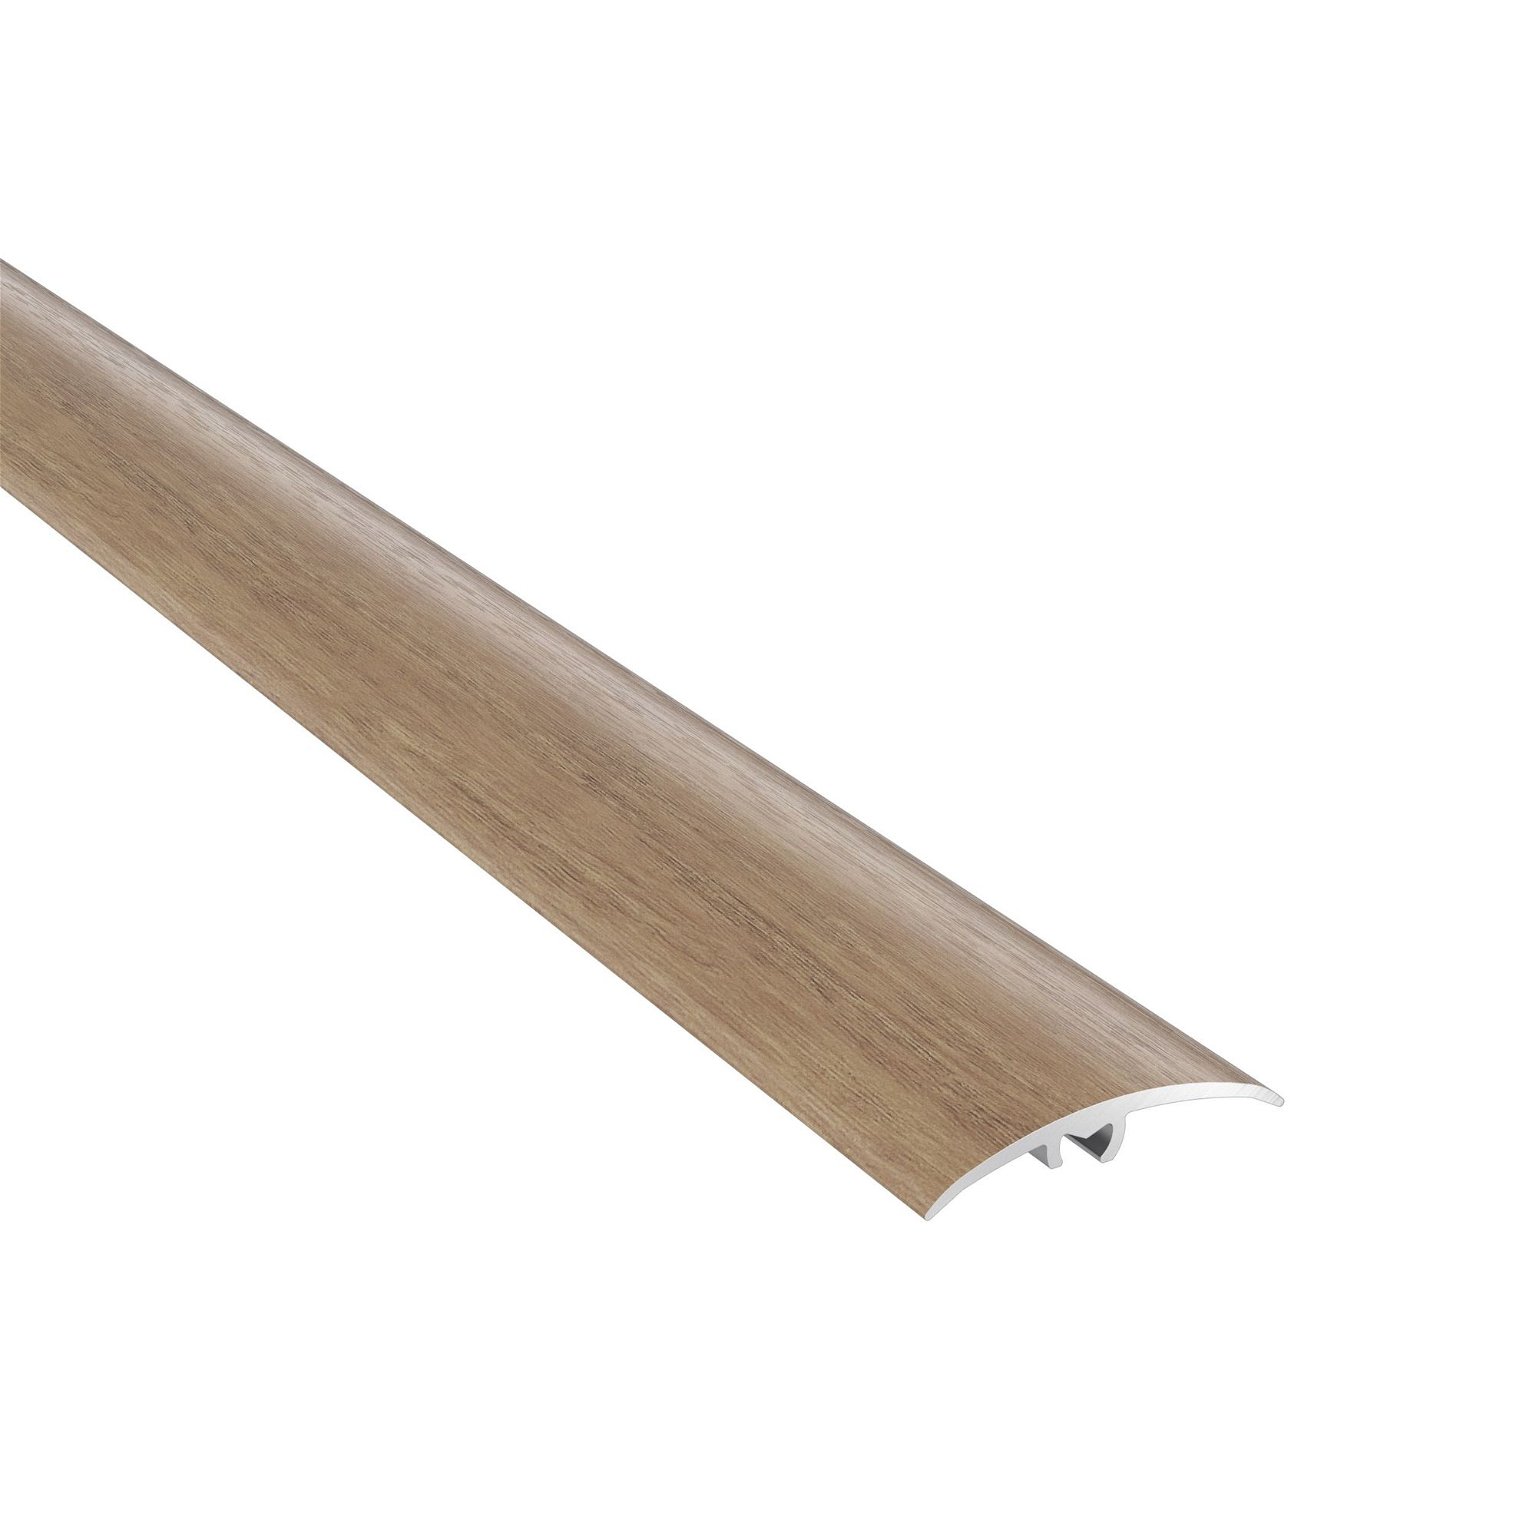 Universali aliumininė grindų juostelė CS1 07, laisvės ąžuolo sp., 37 mm pločio, 93 cm ilgio